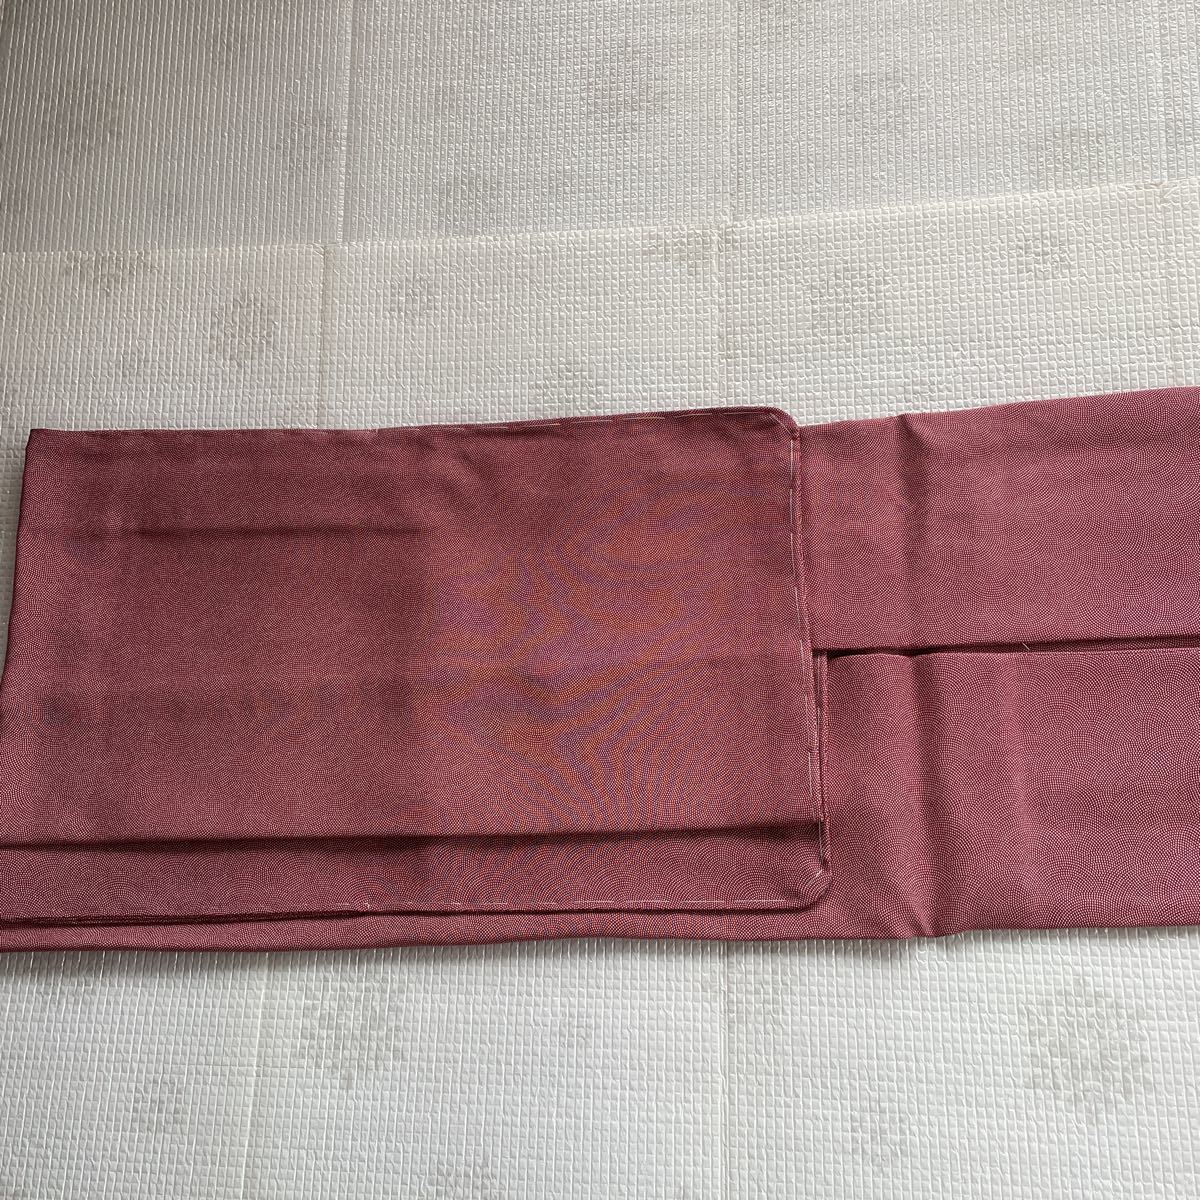 おすすめネット 道行コート 正絹 裄70センチ リメイク作品 赤紫色